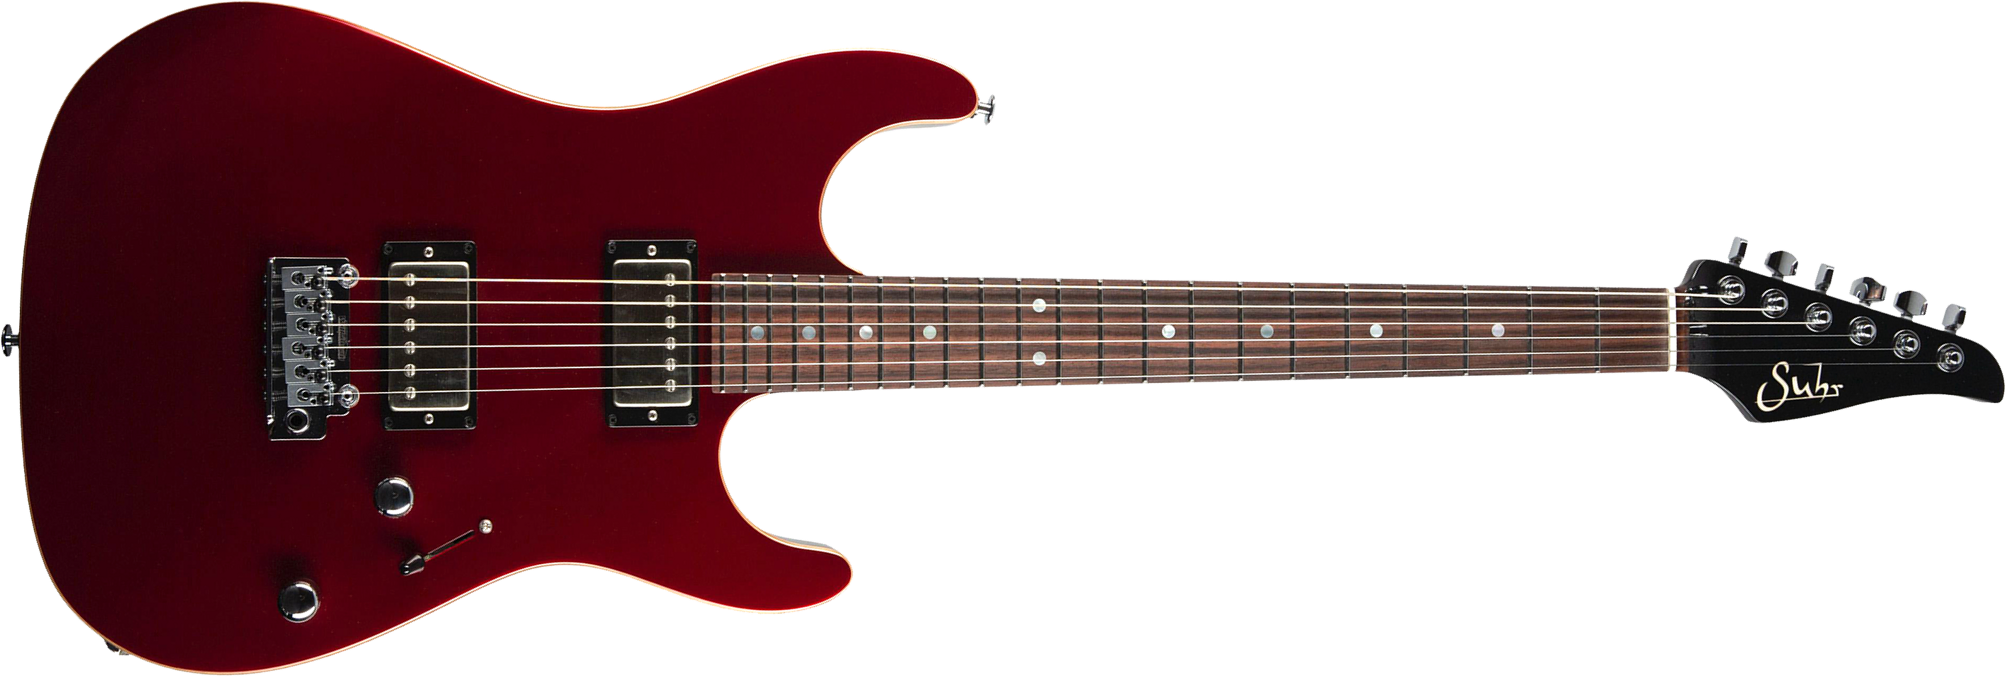 Suhr Pete Thorn Standard 01-sig-0029 Signature 2h Trem Rw - Garnet Red - Elektrische gitaar in Str-vorm - Main picture